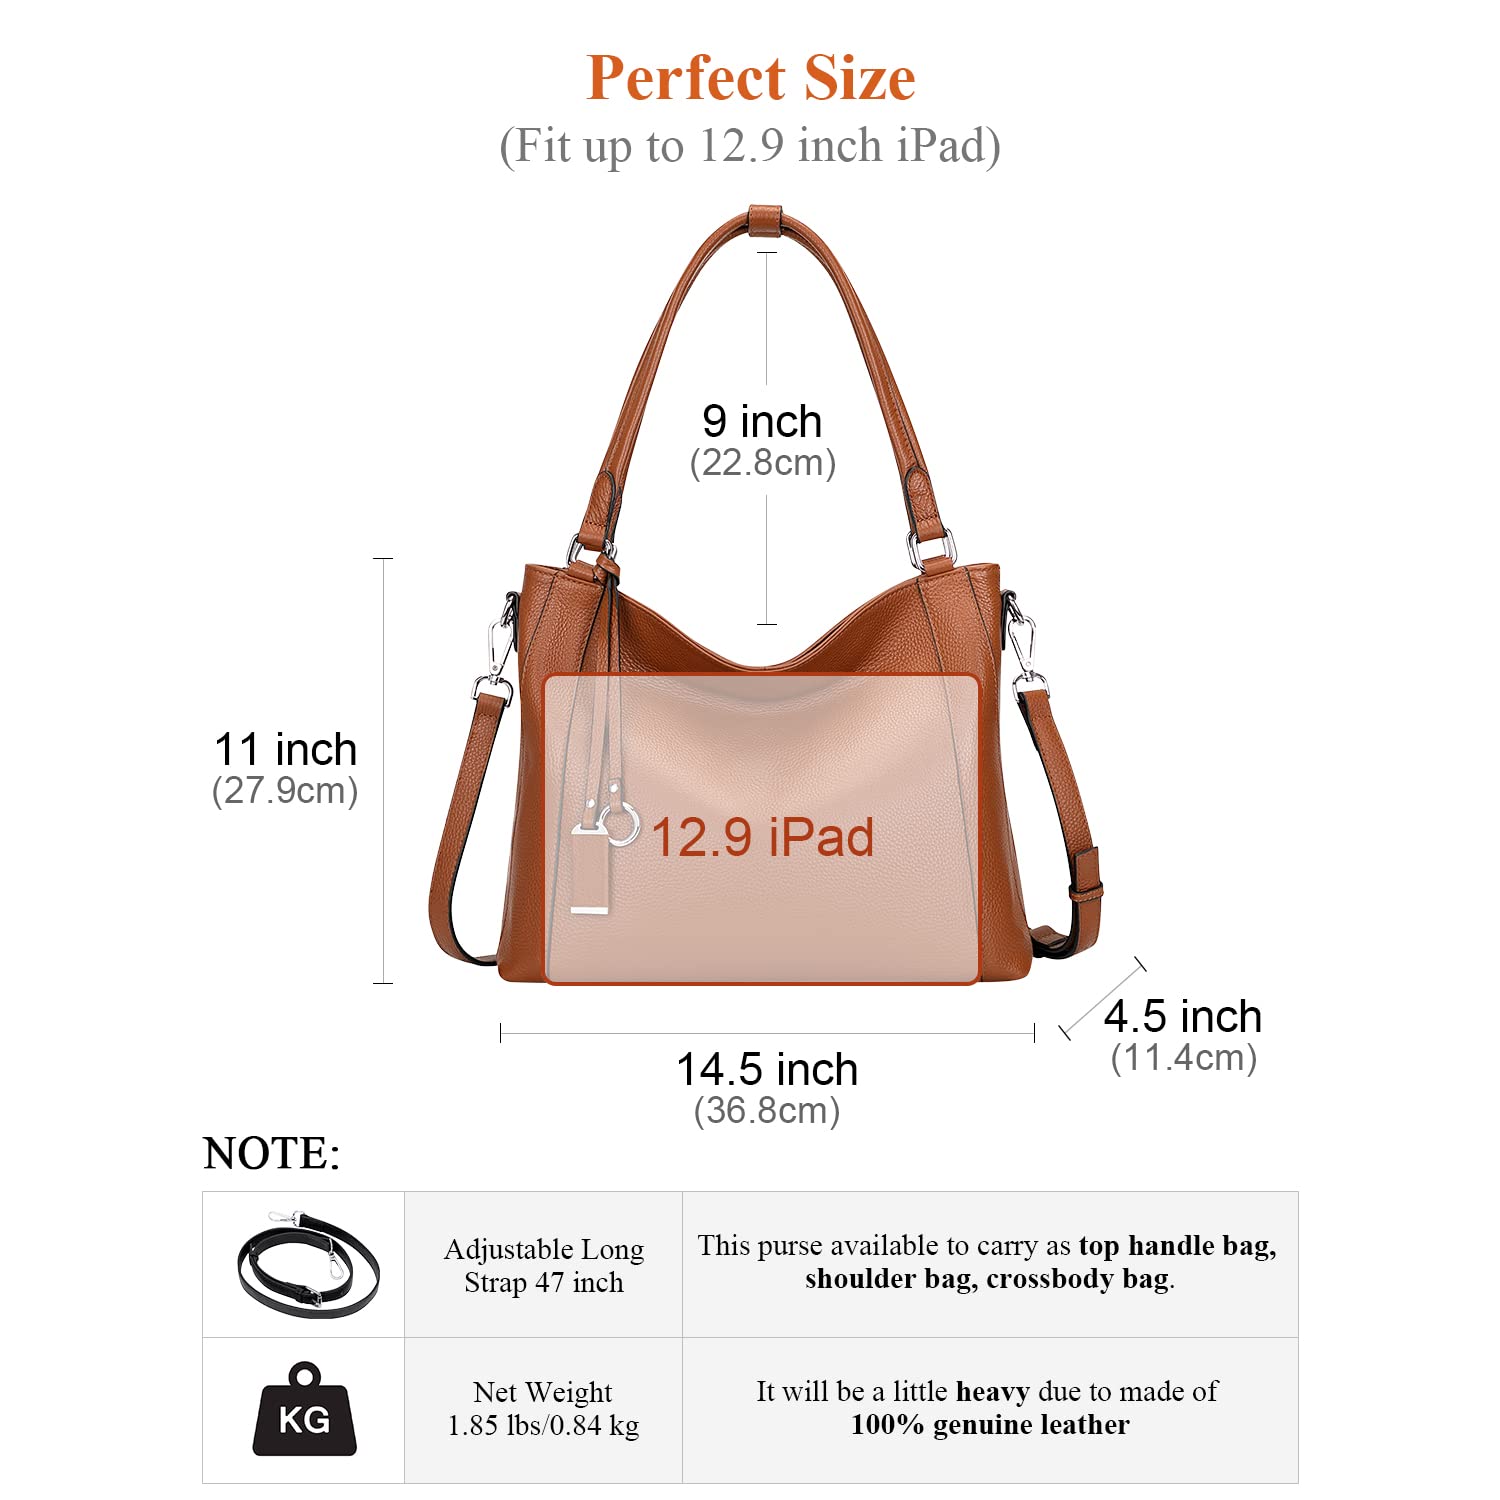 Over Earth Soft Leather Handbags for Women Shoulder Hobo Bag Large Tote Crossbody Bag, 10-orange Brown, Large Size